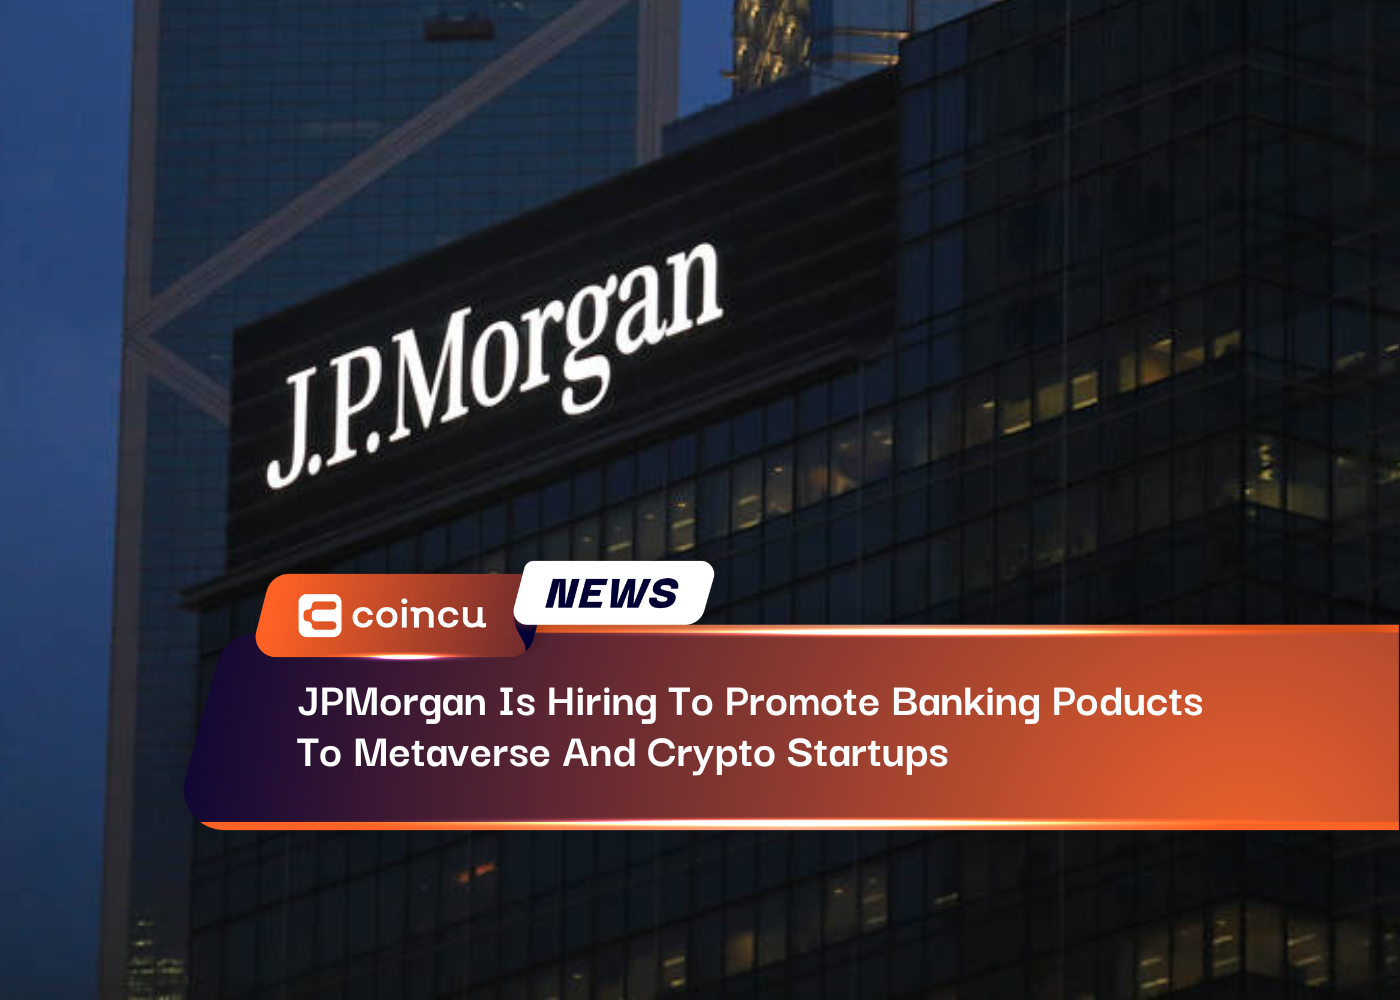 जेपी मॉर्गन बैंकिंग उत्पादों को बढ़ावा देने के लिए नियुक्तियां कर रहा है